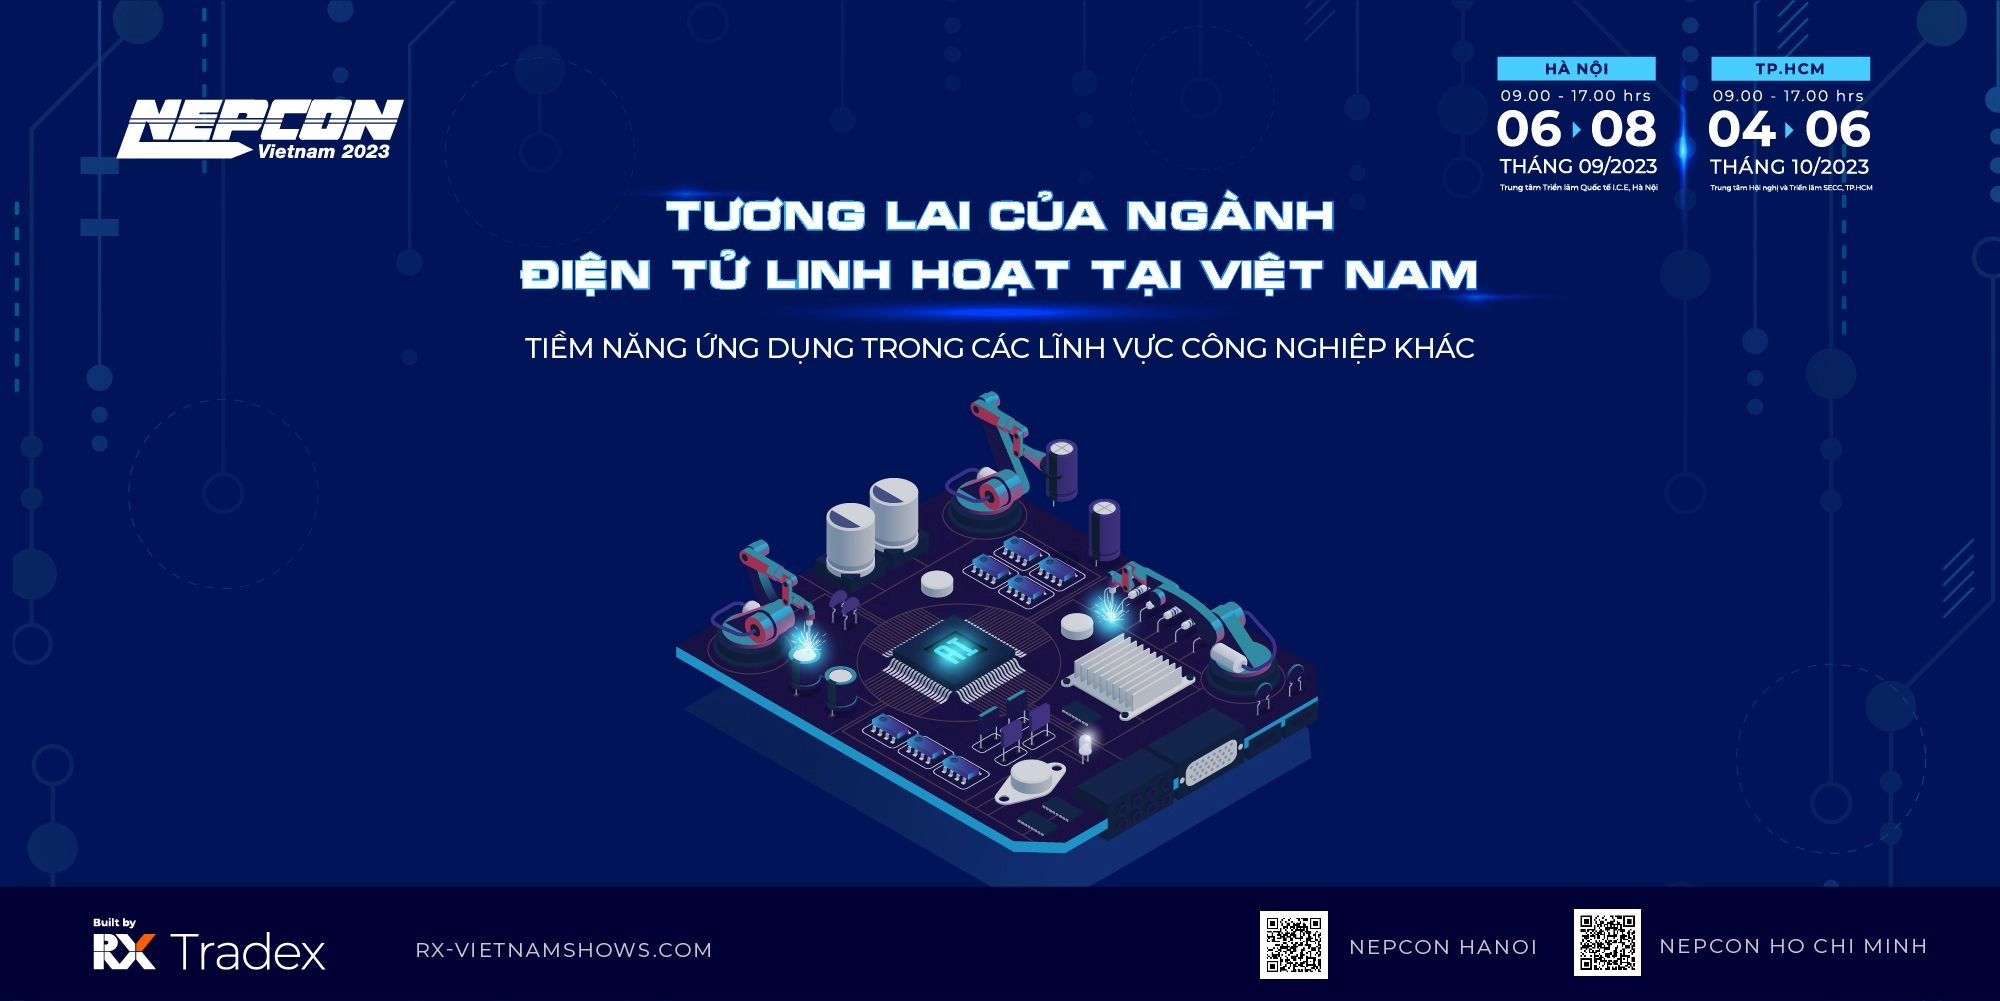 Tương lai của ngành điện tử linh hoạt tại Việt Nam